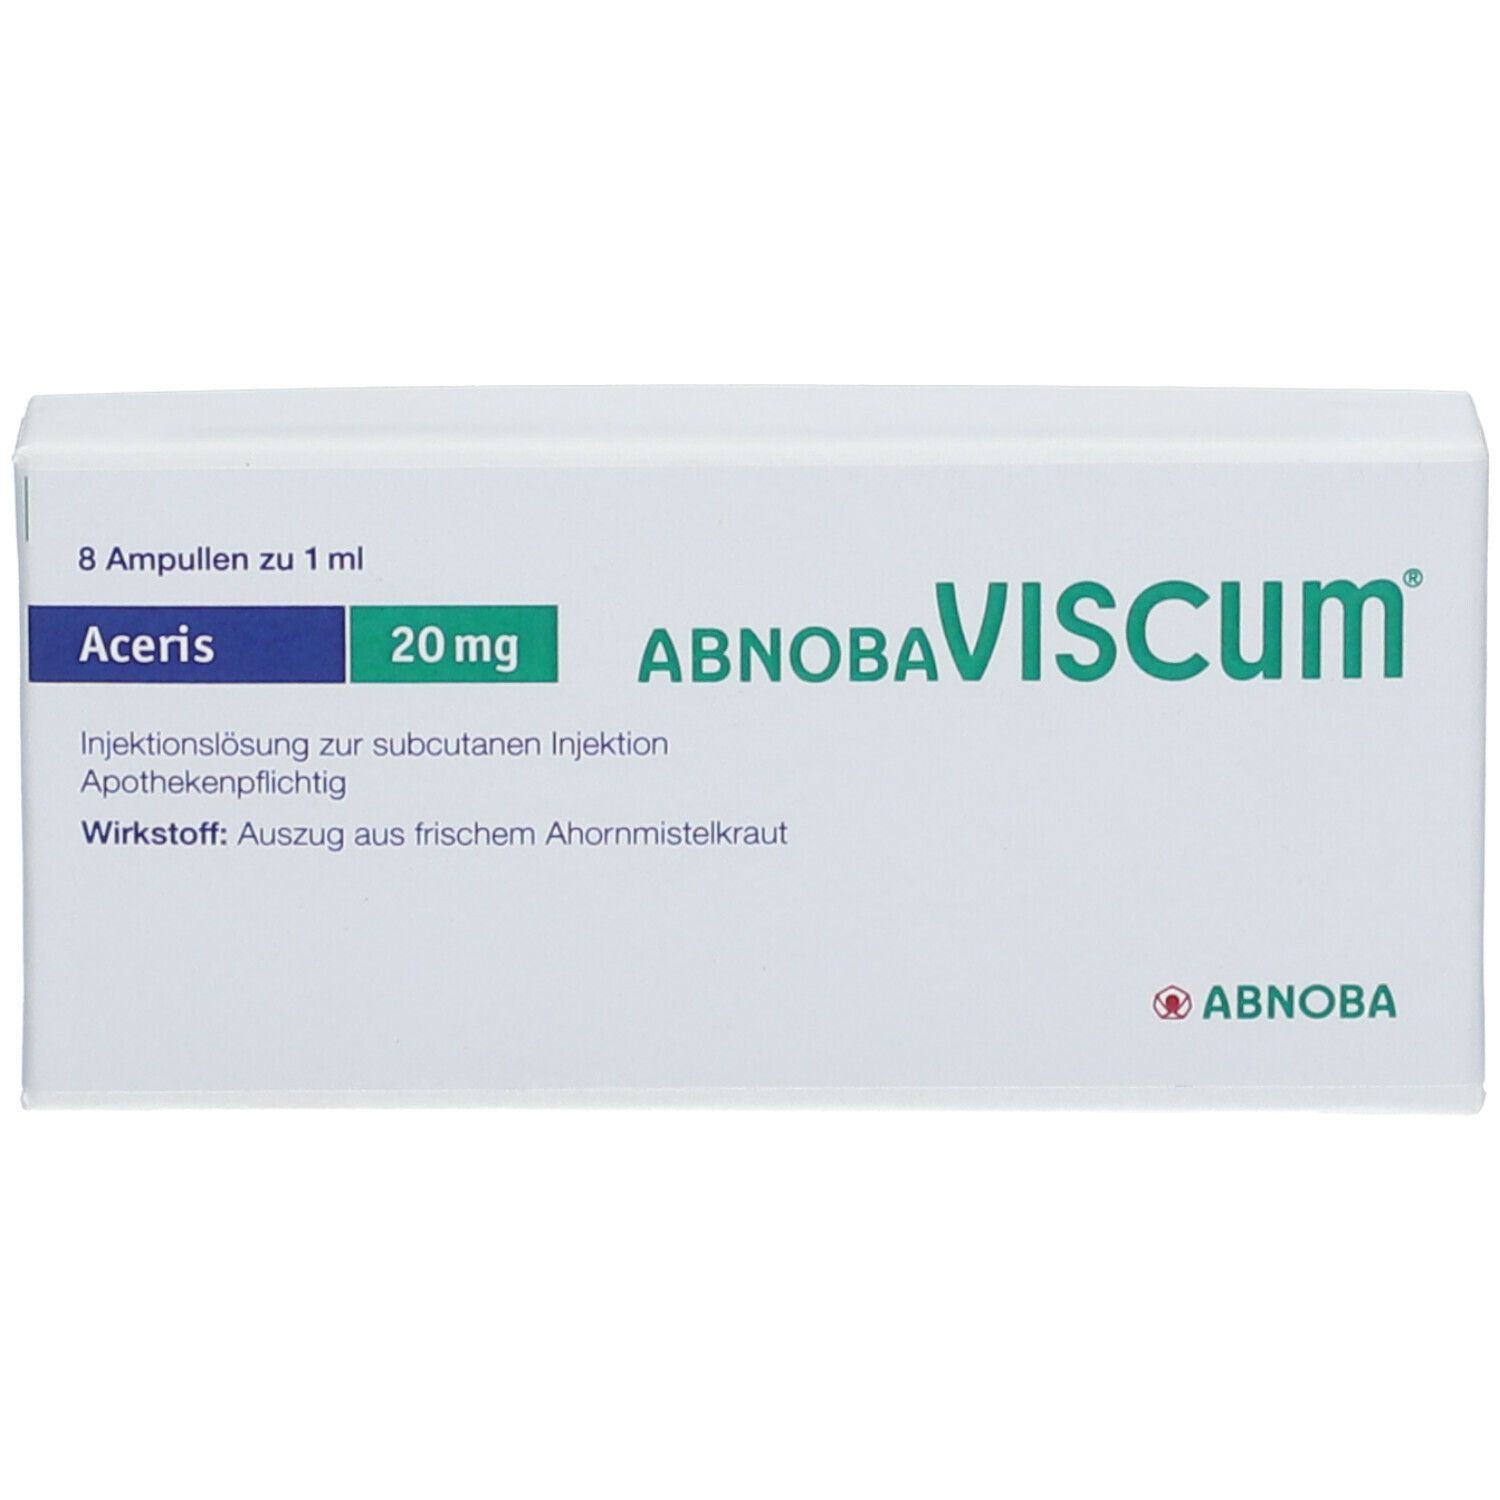 abnobaVISCUM® Aceris 20 mg Ampullen